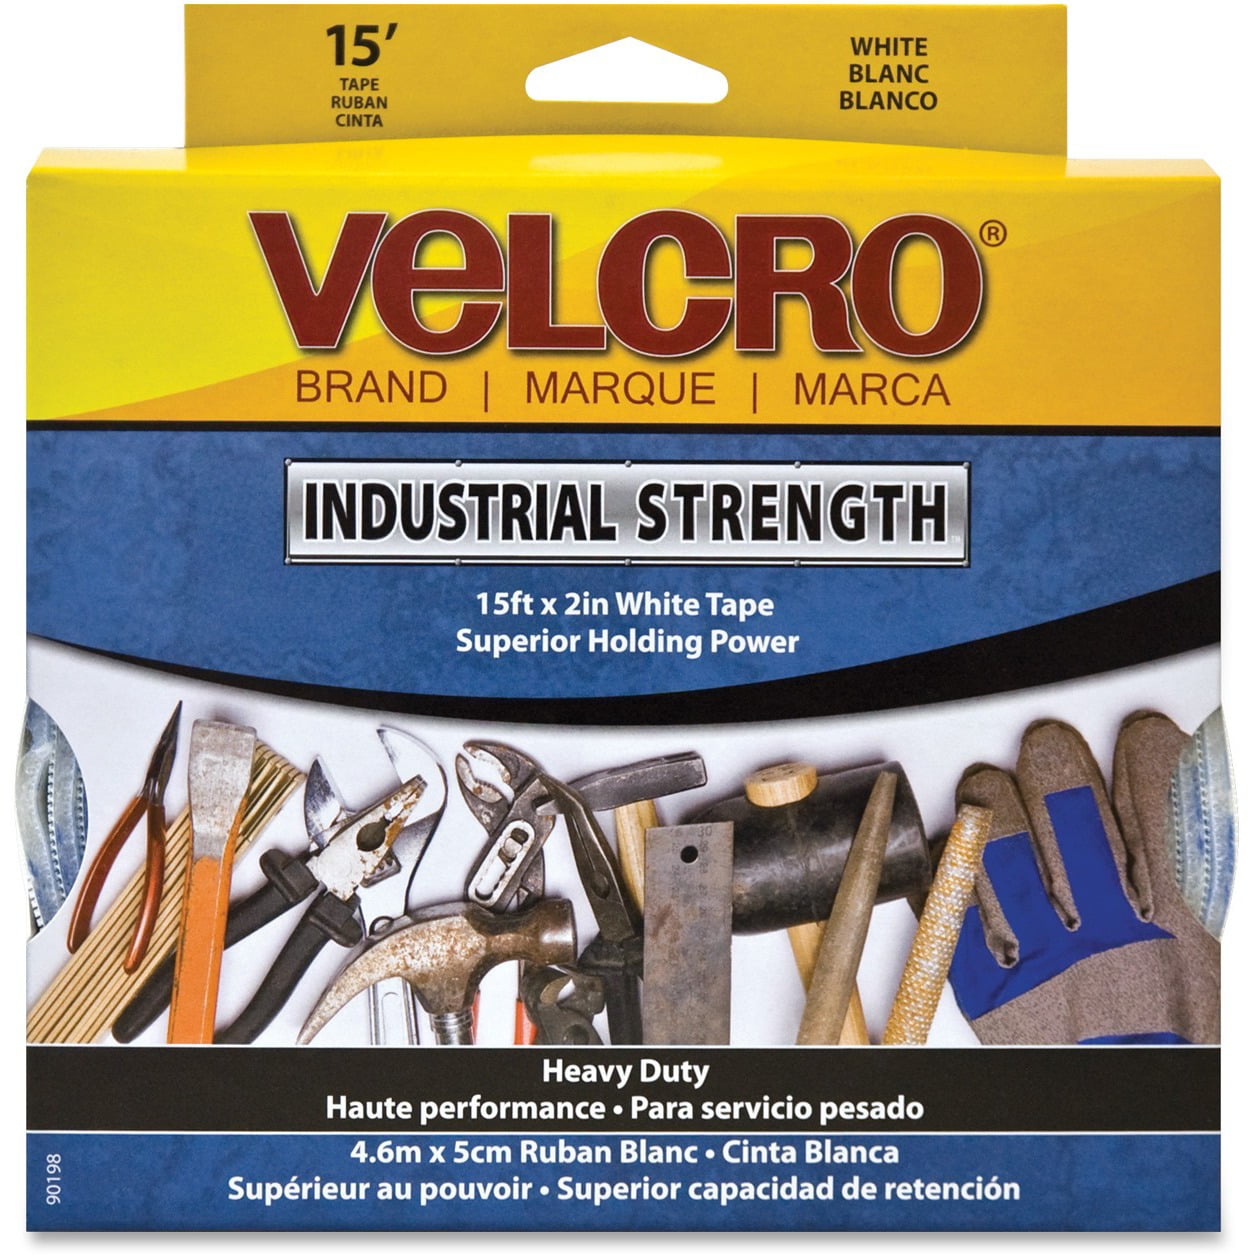 velcro industrial strength hook and loop tape